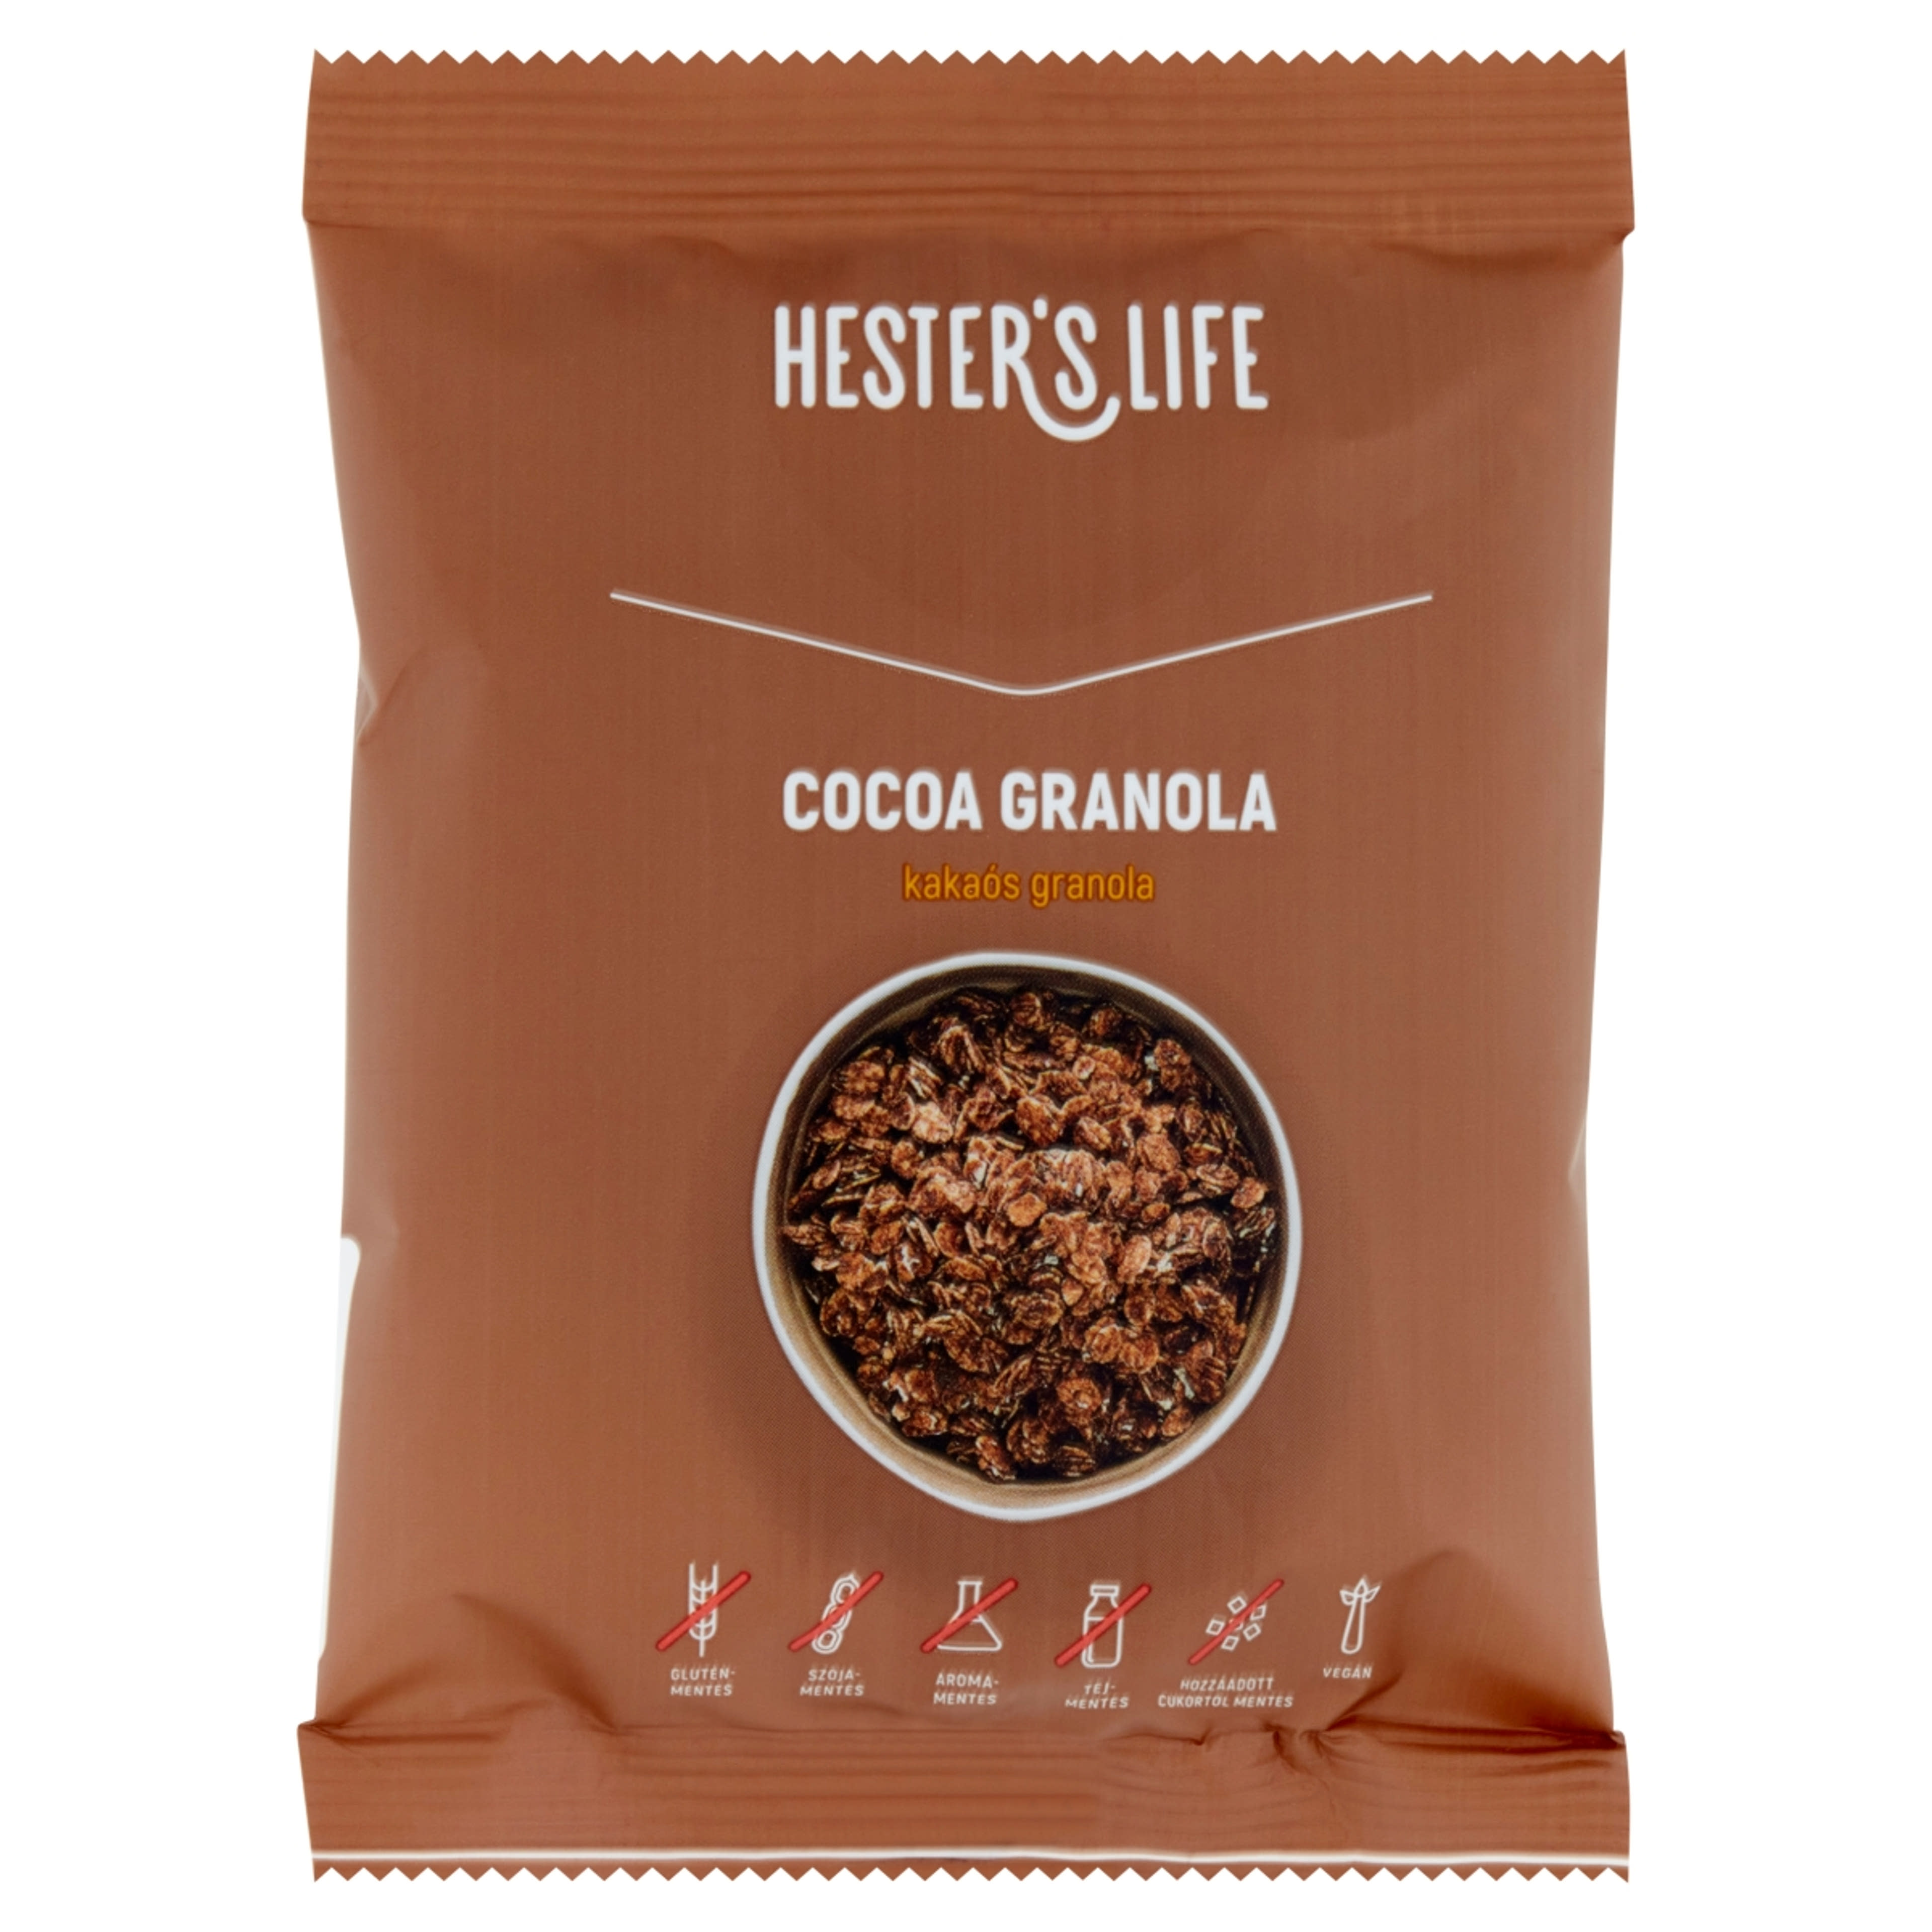 Hester's life cocoa granola - 60 g-1